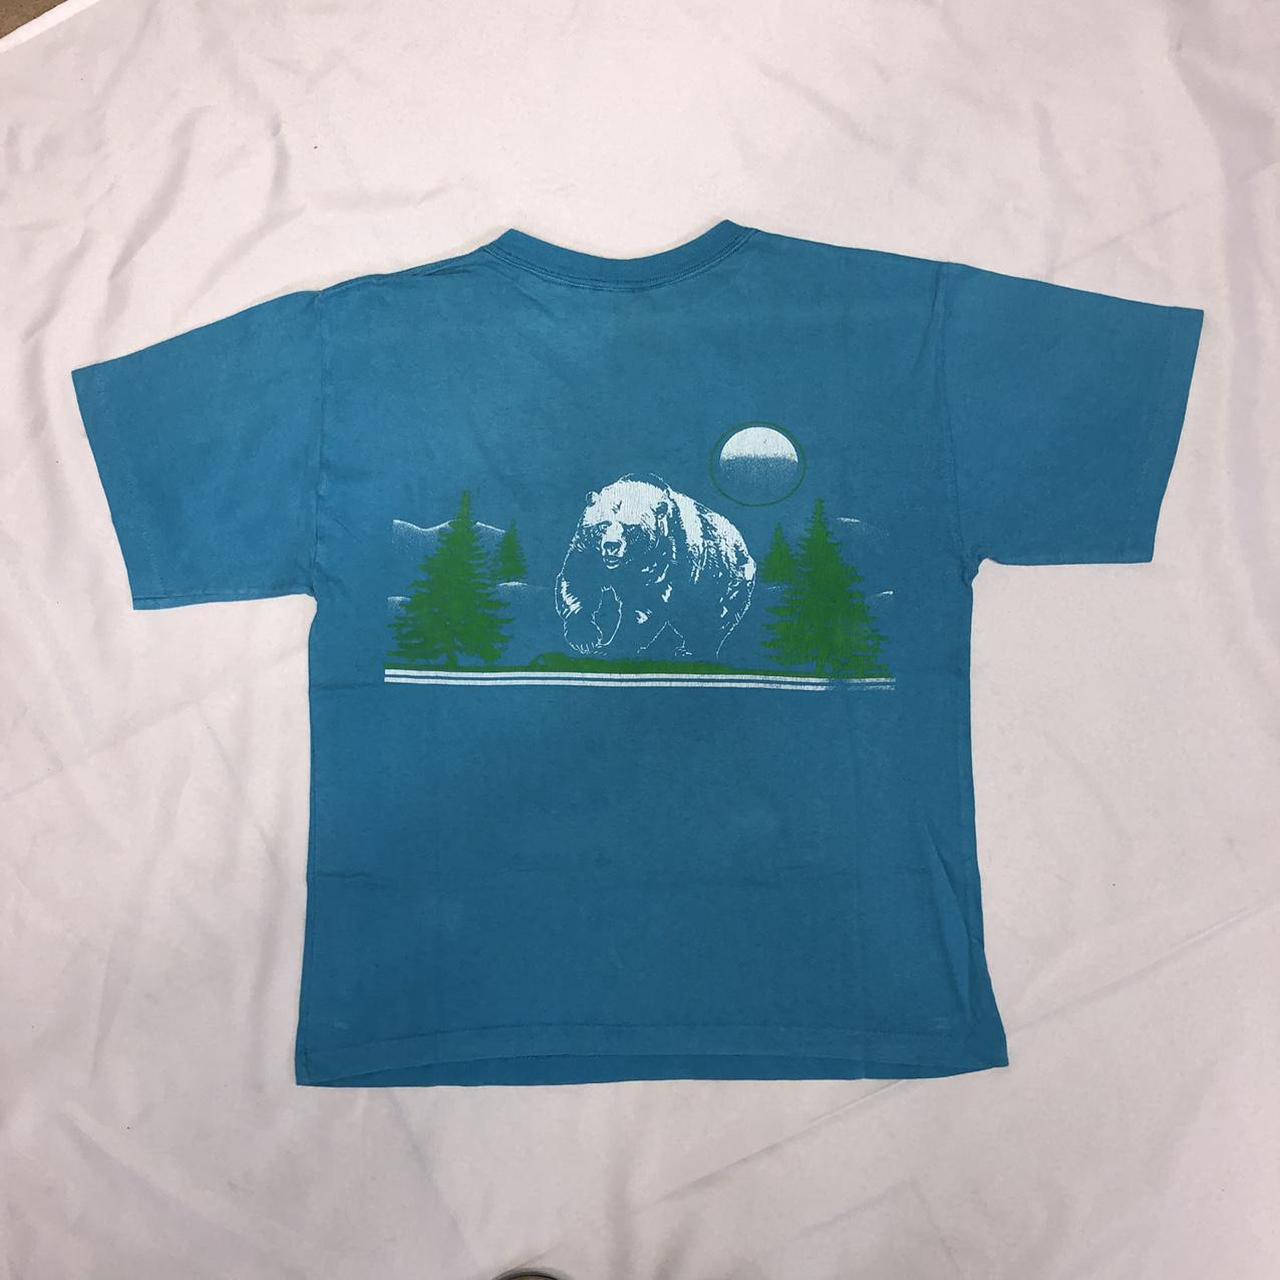 Product Image 3 - Men’s Vintage single stitch t-shirt

No